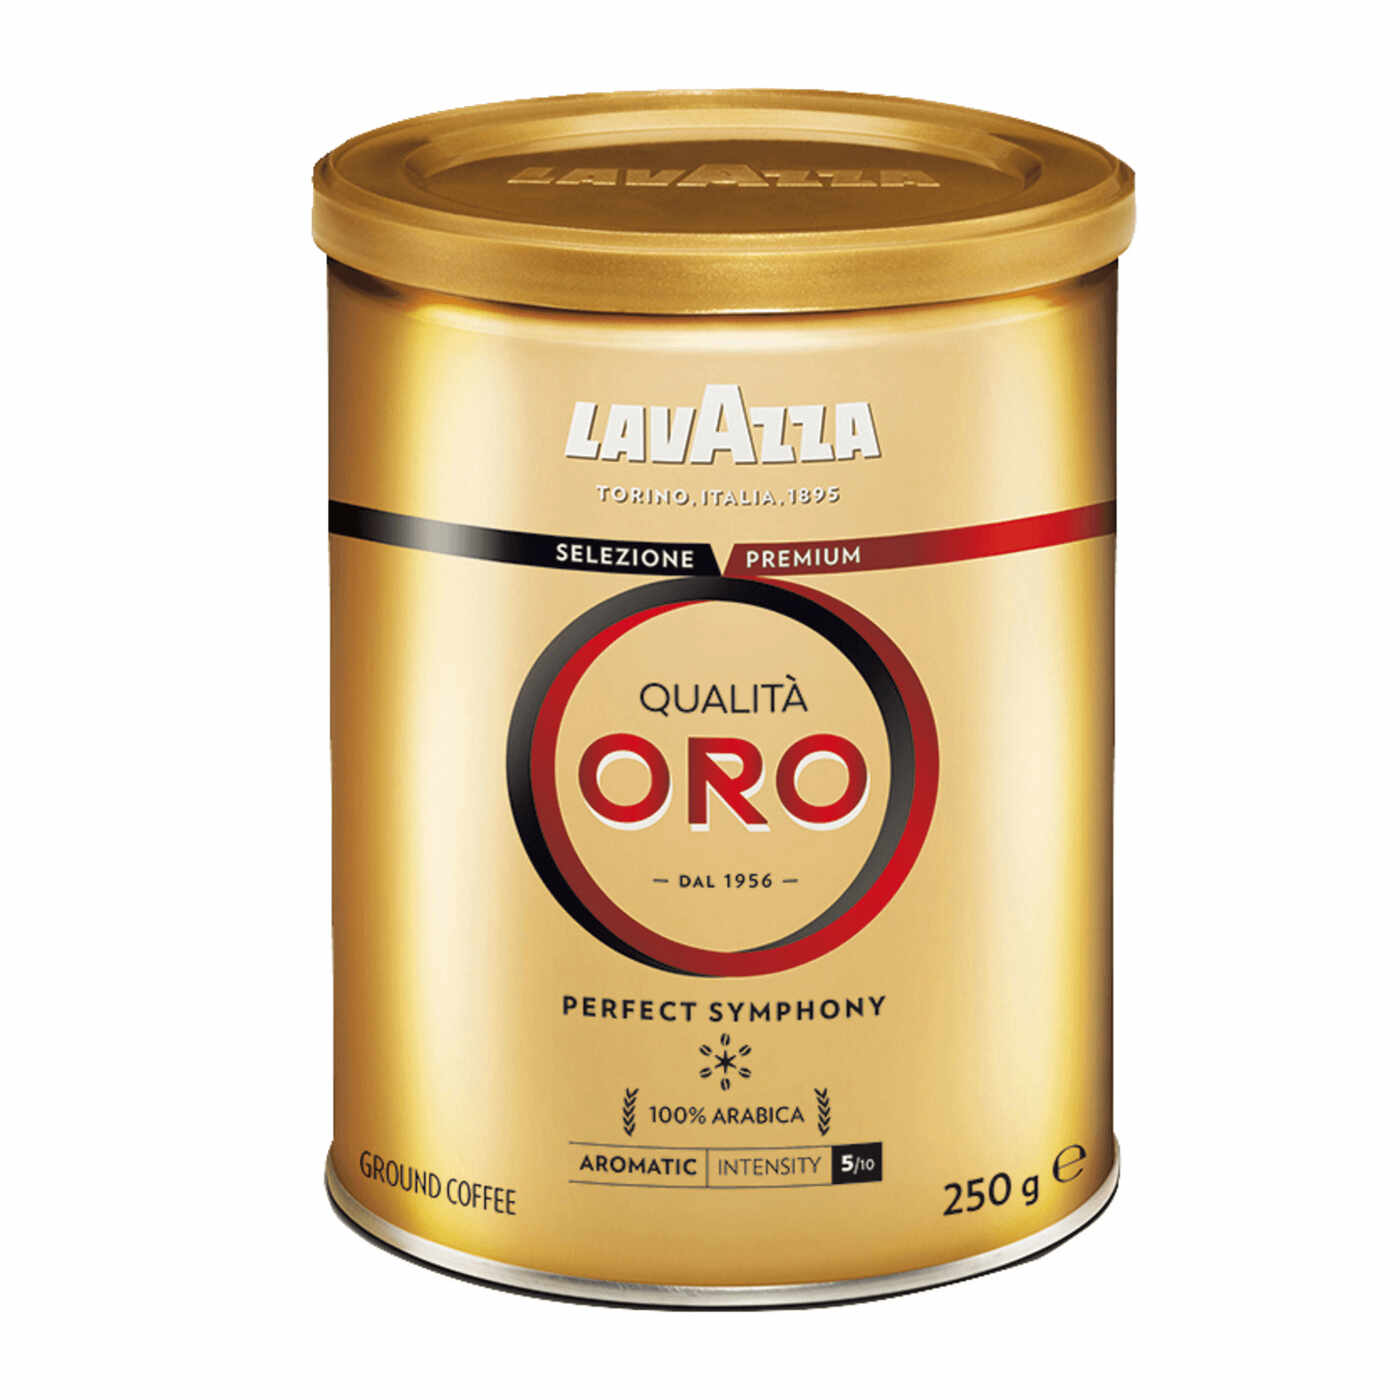 Lavazza Qualita Oro cafea macinata cutie metalica 250g